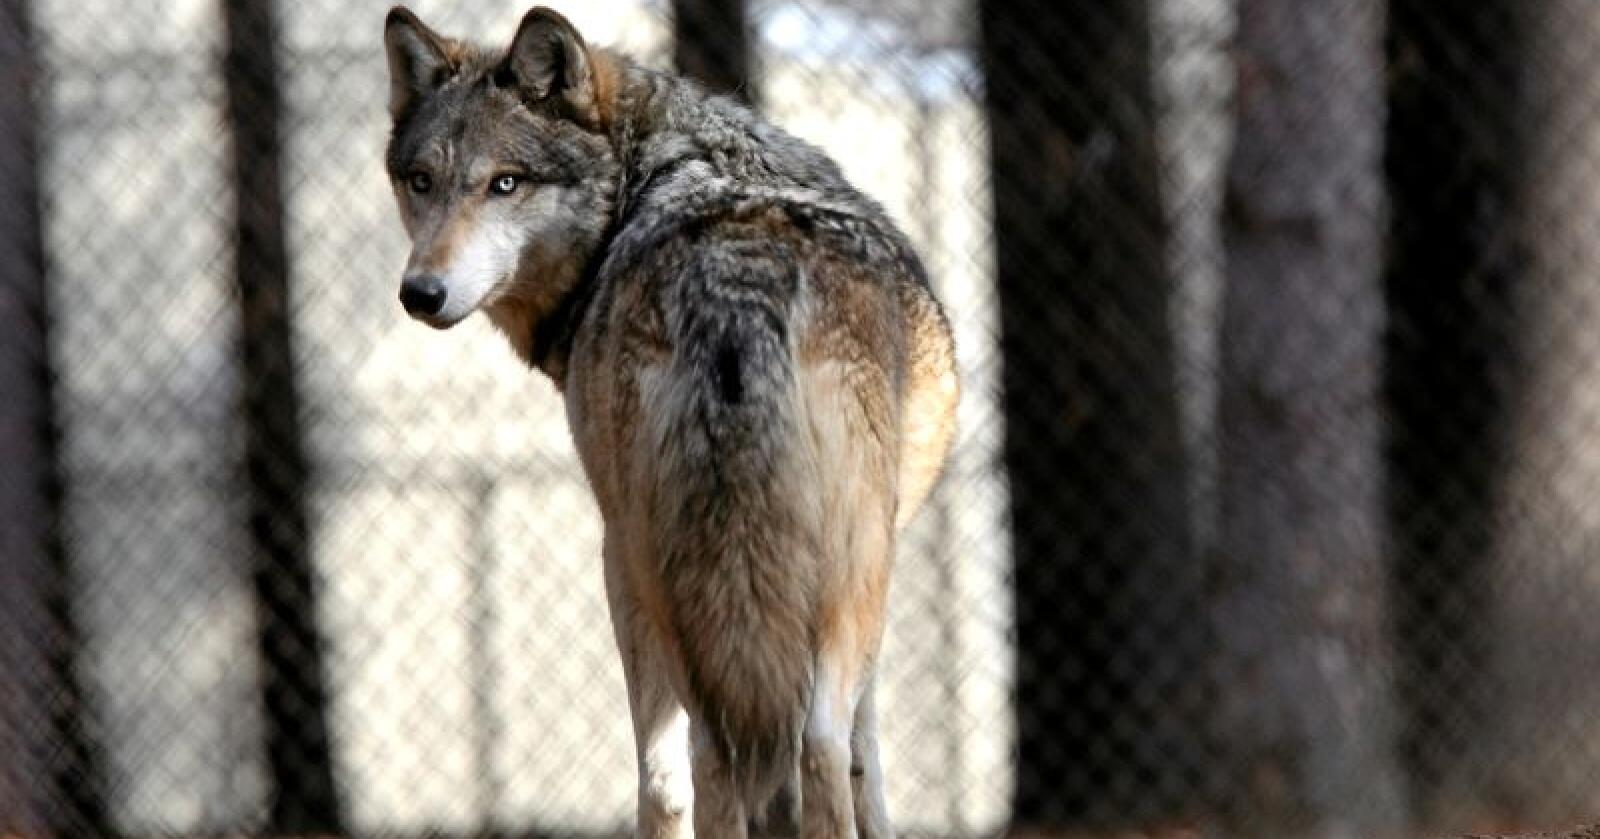 Flere ulveflokker har reetablert seg utenfor Madrid. Illustrasjonsfoto: Dave Kettering / AP